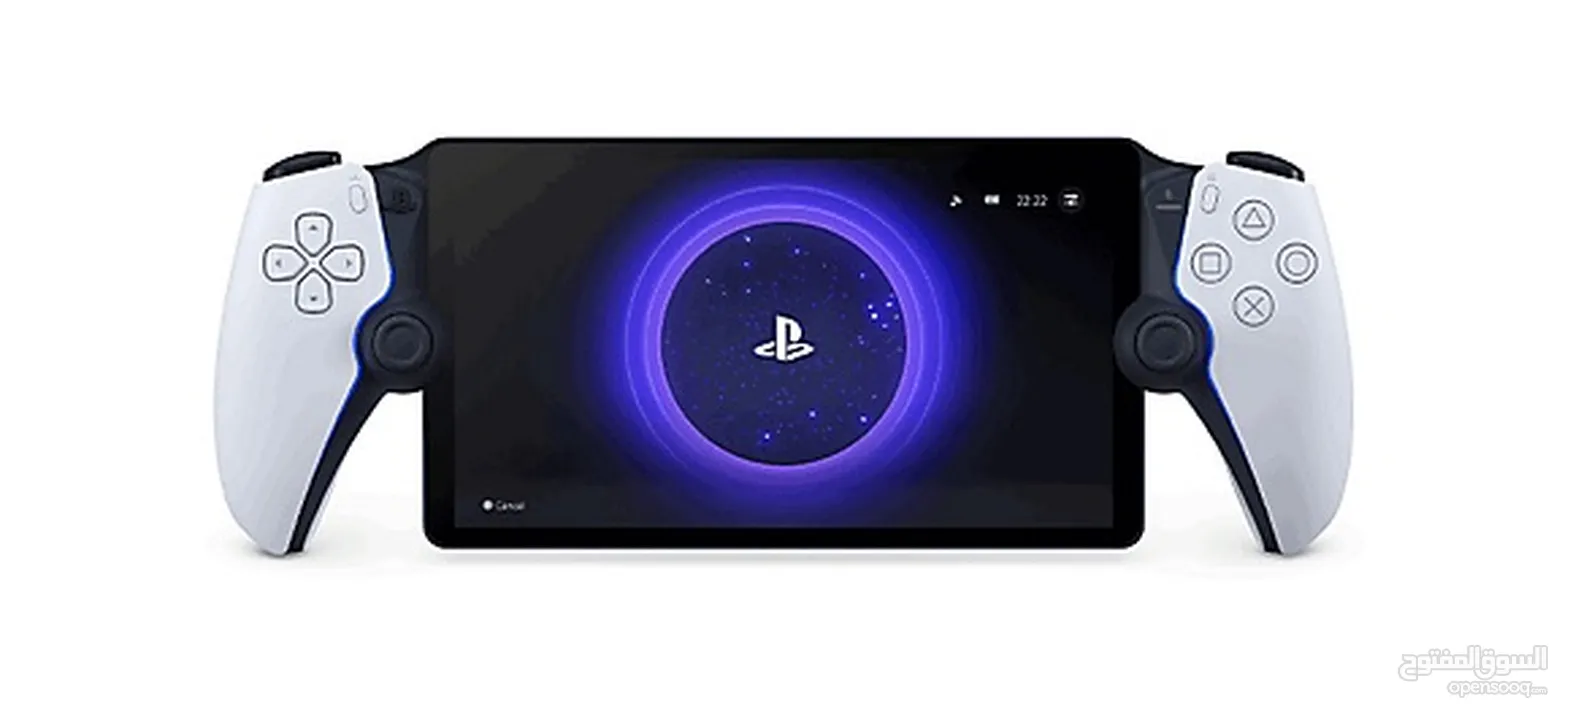 PlayStation portal